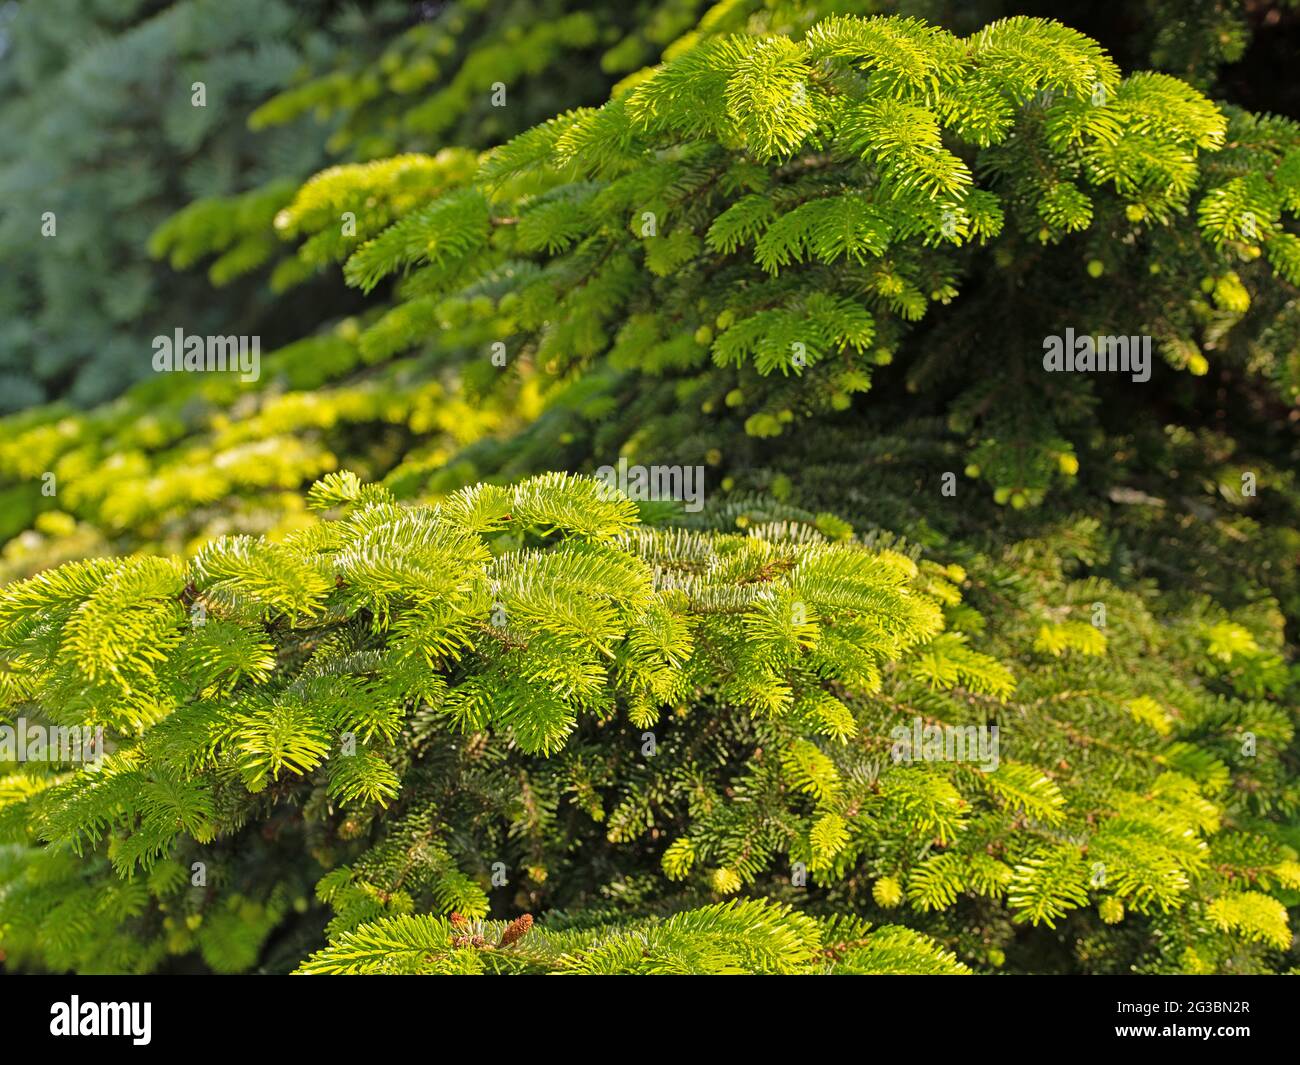 Young shoots of the Nordmann fir, Abies nordmanniana Stock Photo